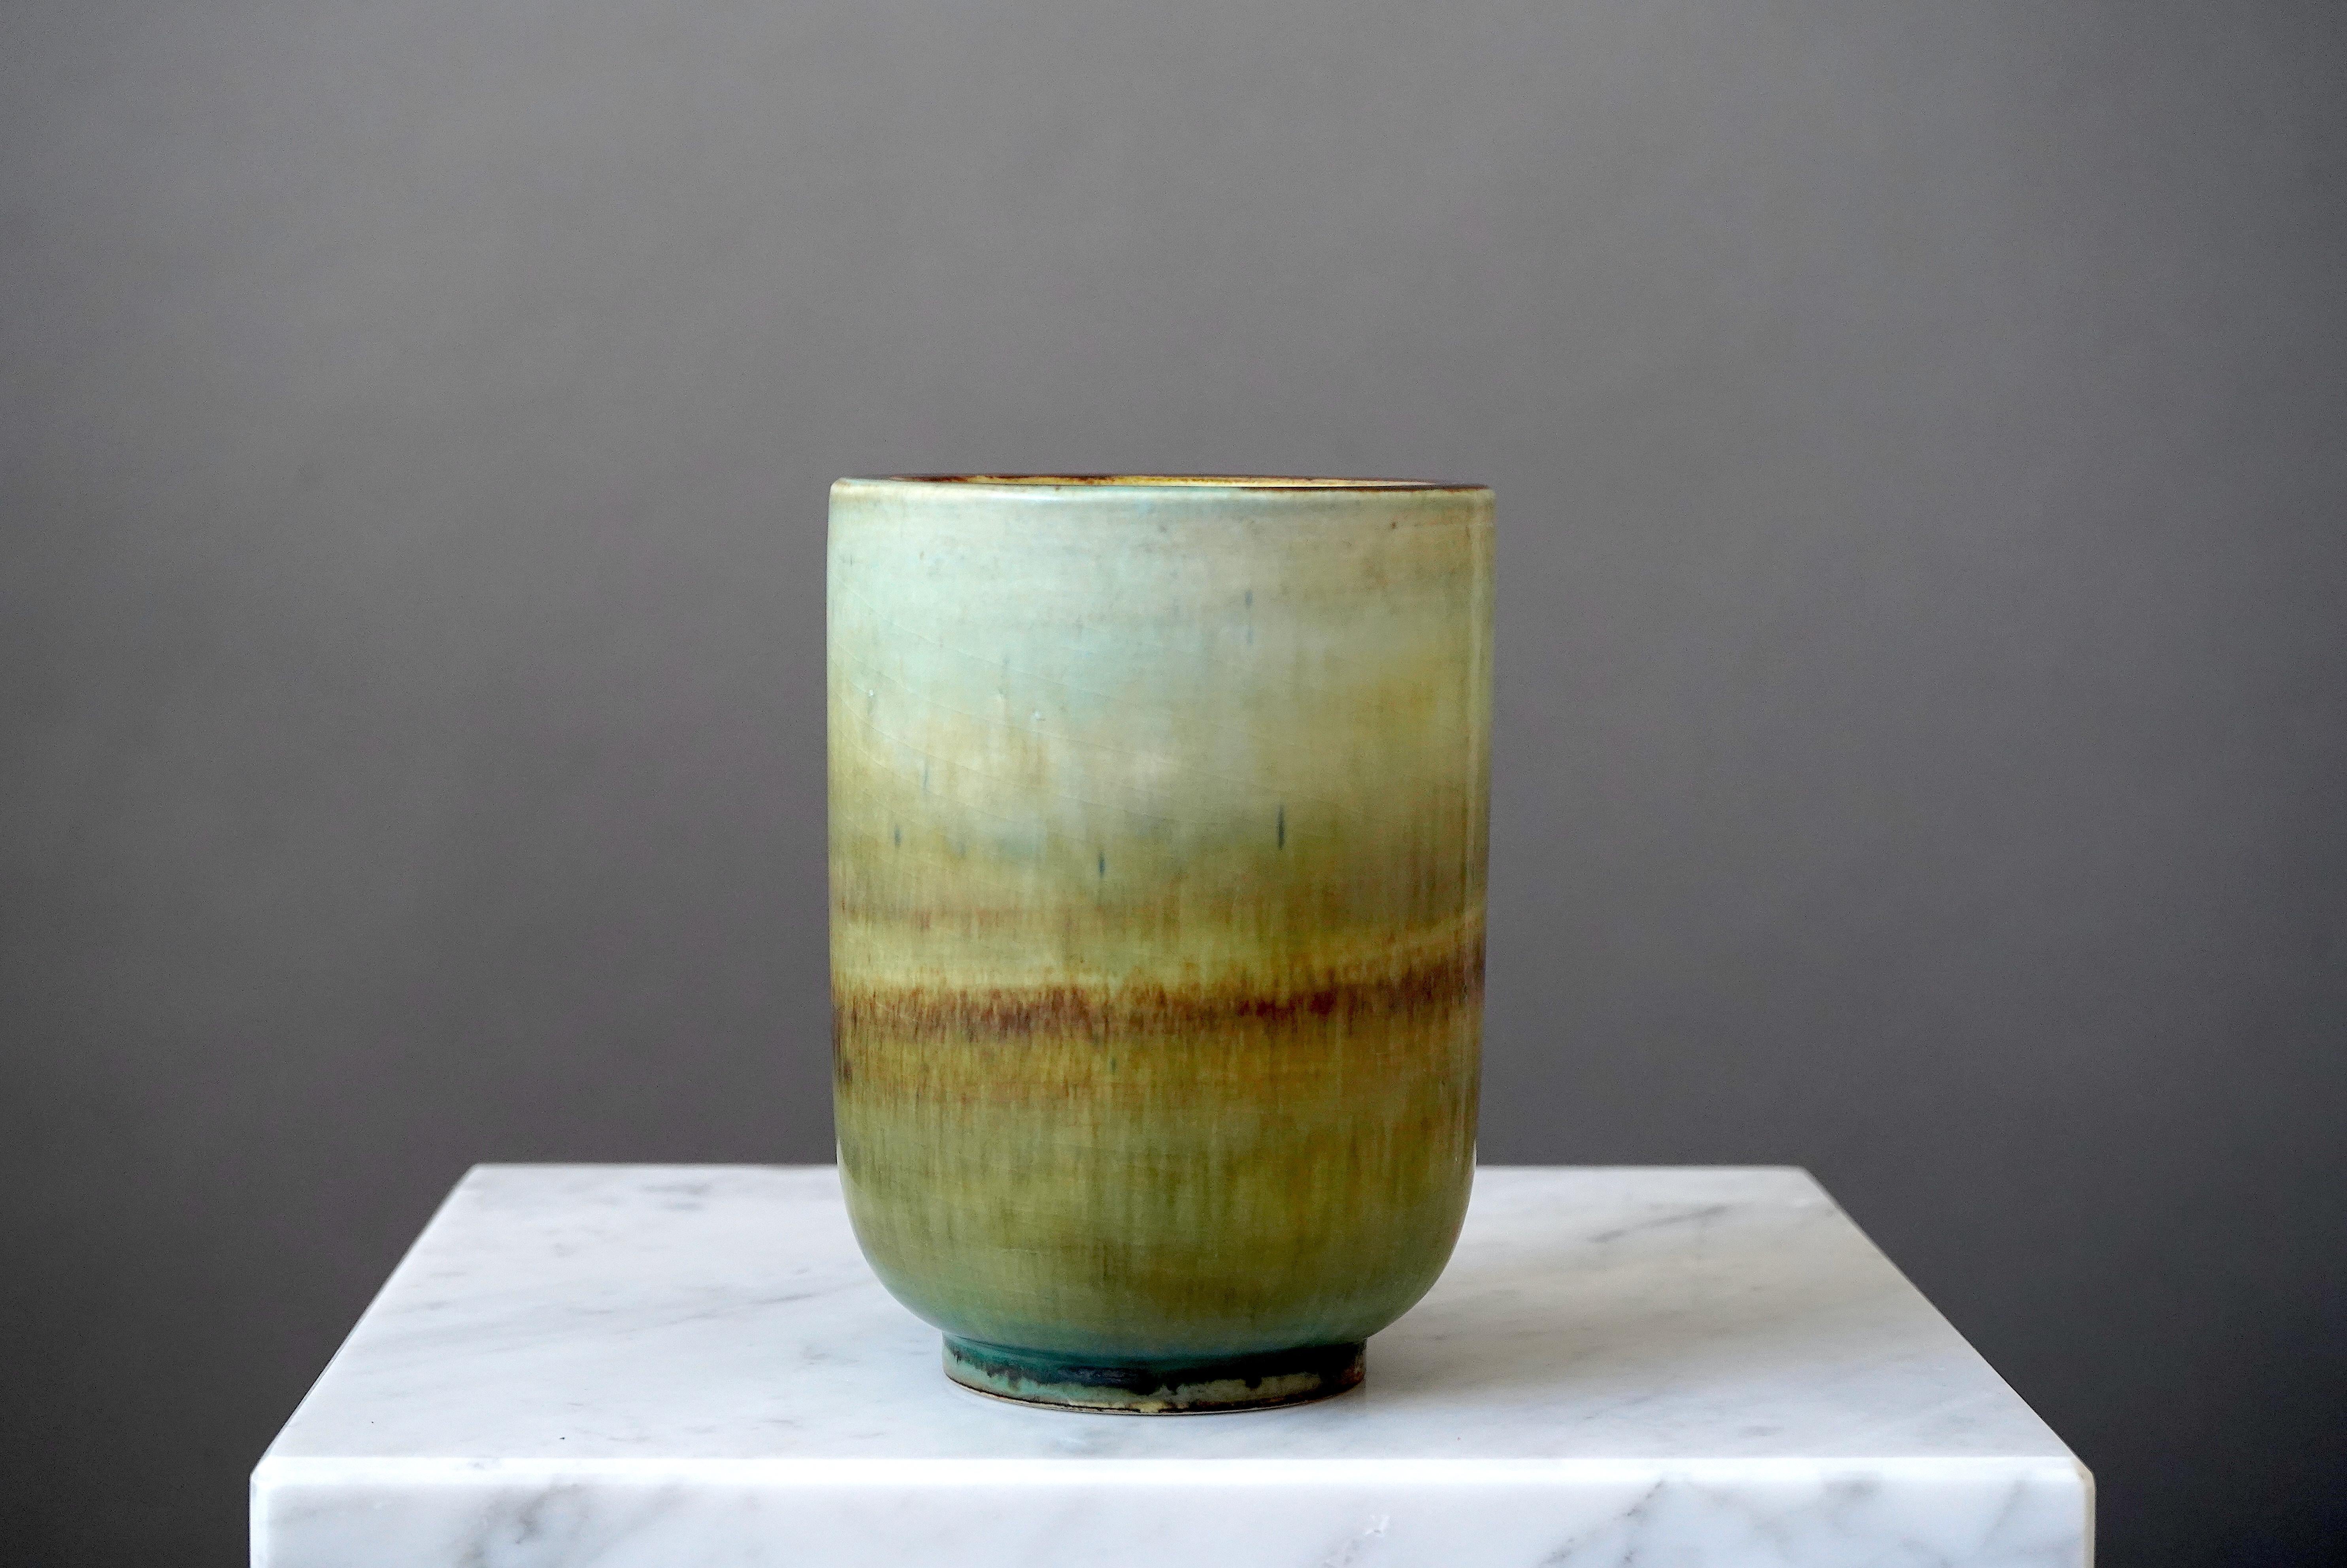 Schöne und seltene Vase aus Steingut, entworfen von Gertrud Lönegren.
Dieses Studio-Stück wurde zwischen 1936-41 in Rorstrand in Schweden geschaffen.

Exquisite Glasur. Ausgezeichneter Zustand. 
Aufgedruckt 'Rörstrand / Lönegren / SCHWEDEN /